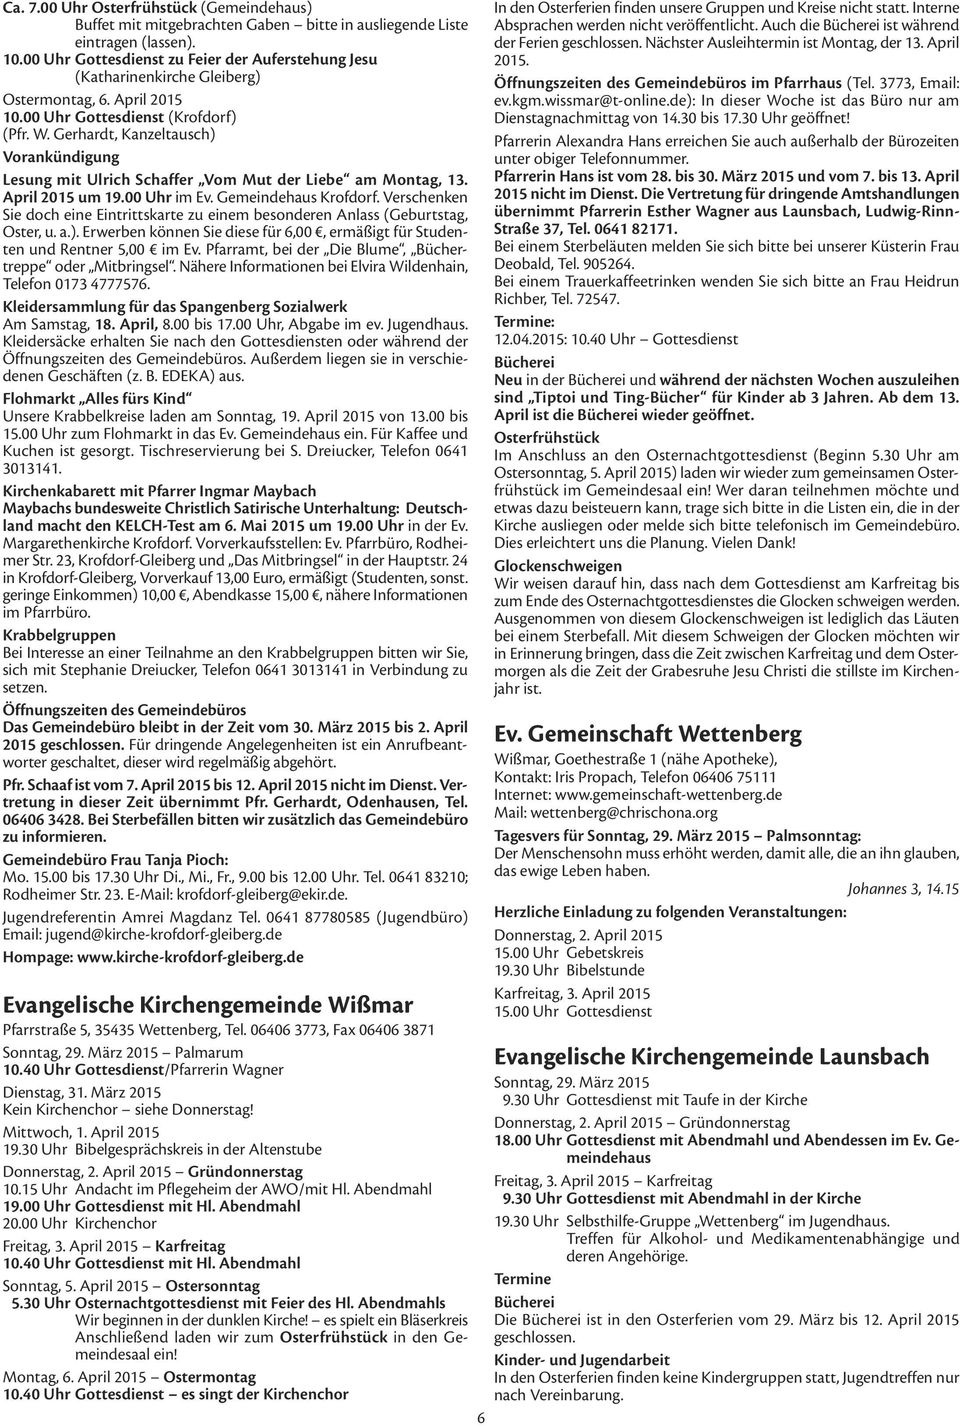 Gerhardt, Kanzeltausch) Vorankündigung Lesung mit Ulrich Schaffer Vom Mut der Liebe am Montag, 13. April 2015 um 19.00 Uhr im Ev. Gemeindehaus Krofdorf.